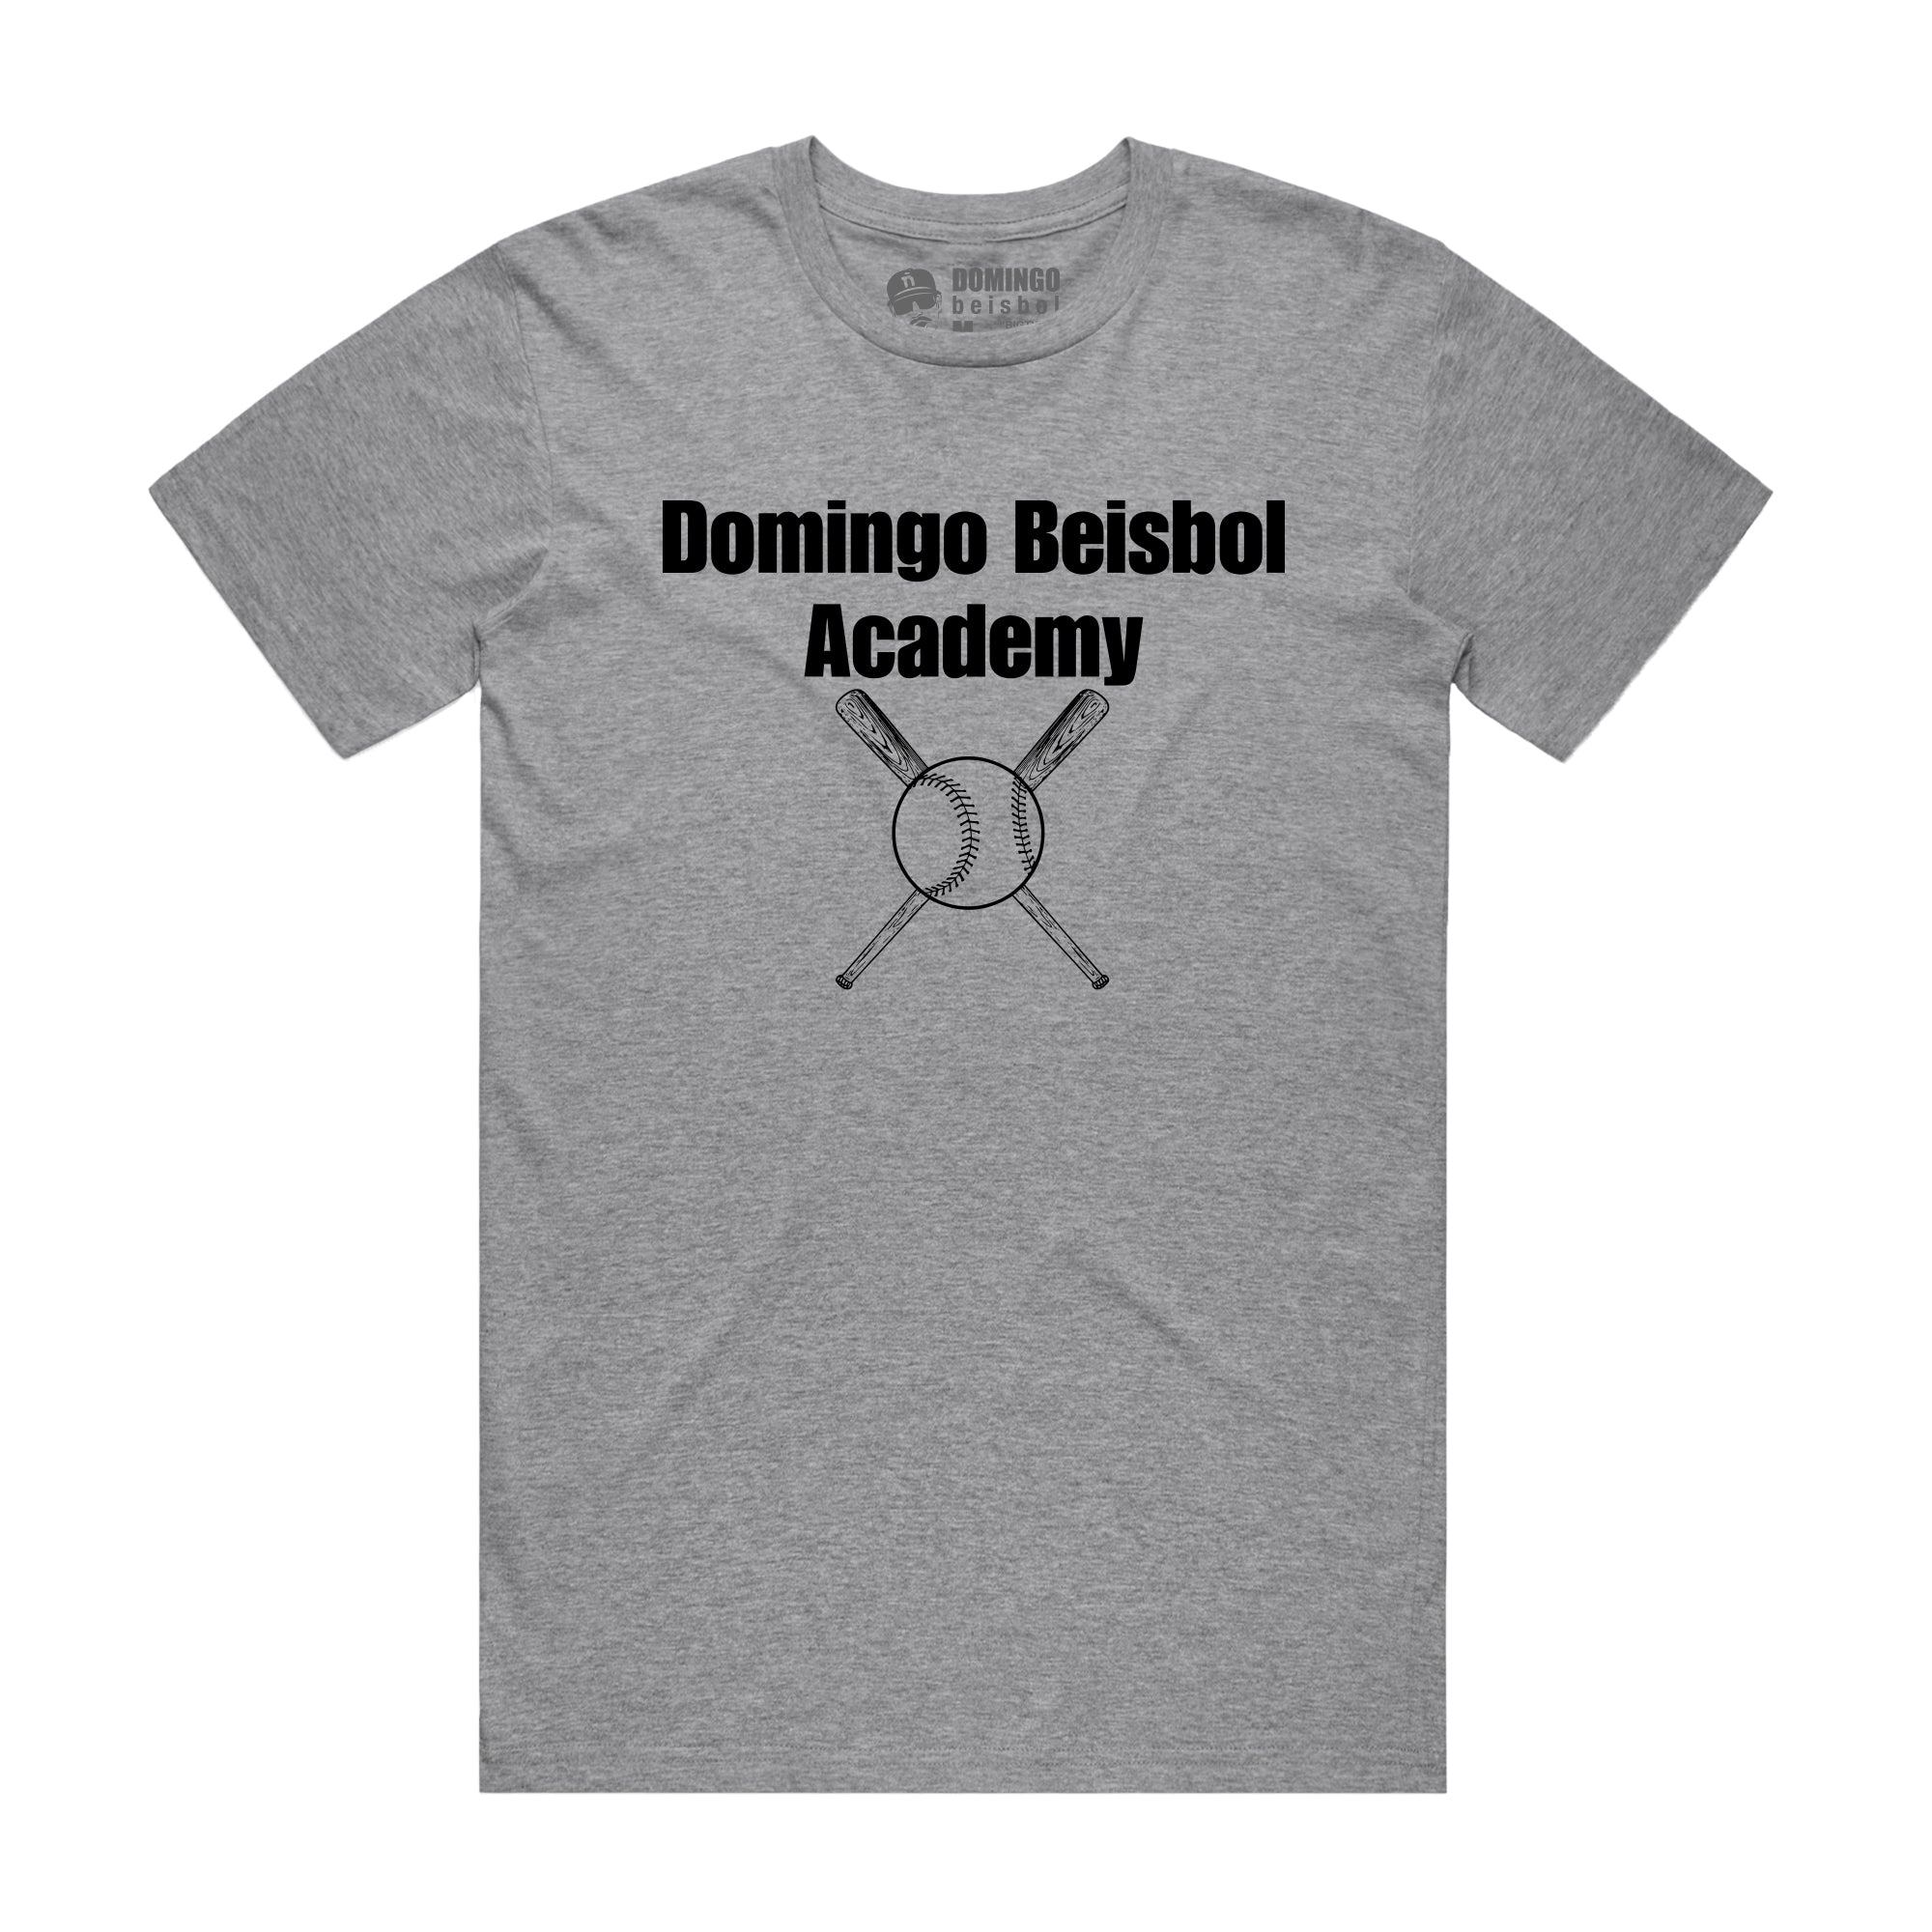 Domingo Beisbol Academy Tee